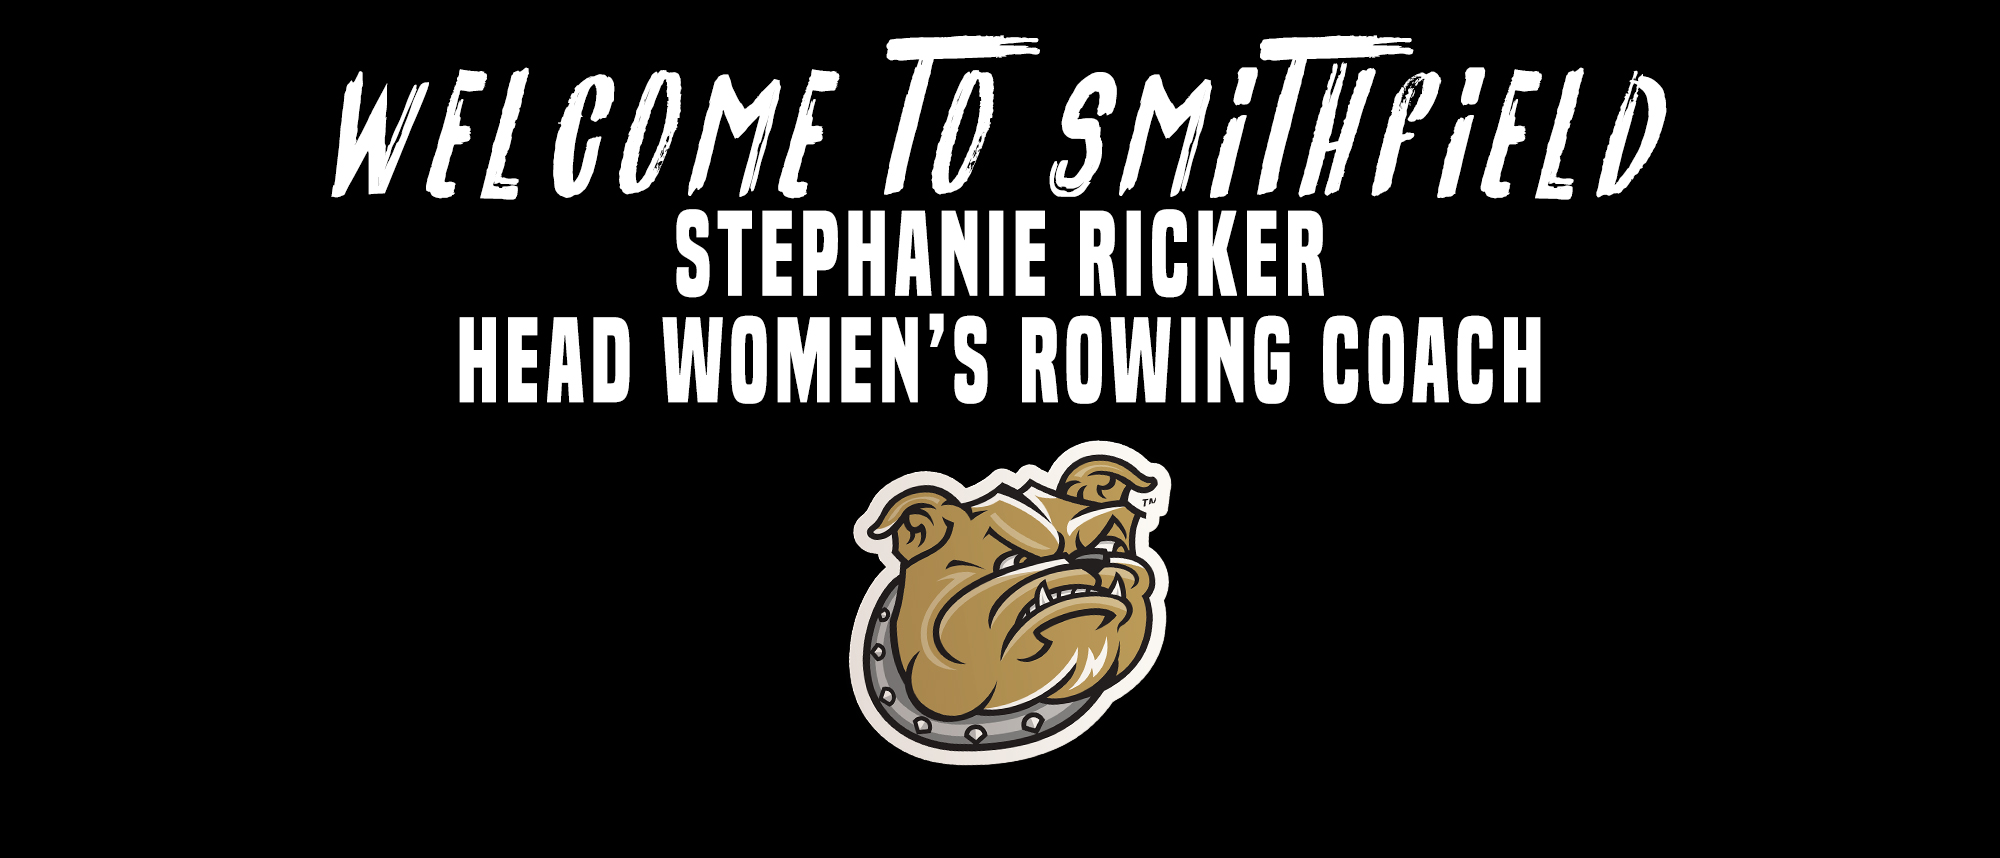 Ricker named women's rowing head coach